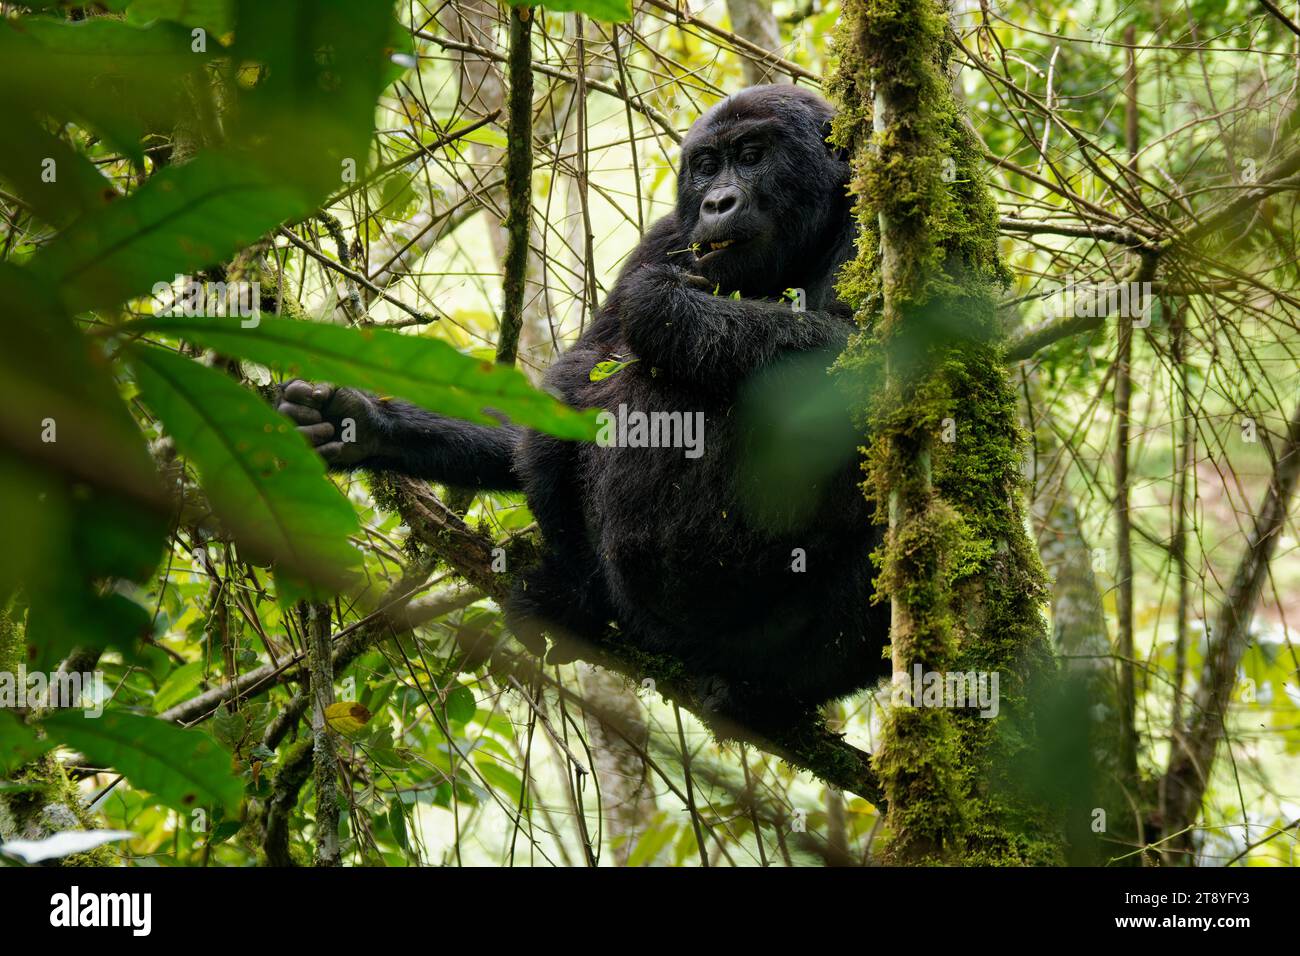 Gorilla Orientale - Gorilla beringei ha messo in pericolo il più grande primate vivente, gorilla di pianura o gorilla di Grauer (graueri) nel verde della pioggia Foto Stock